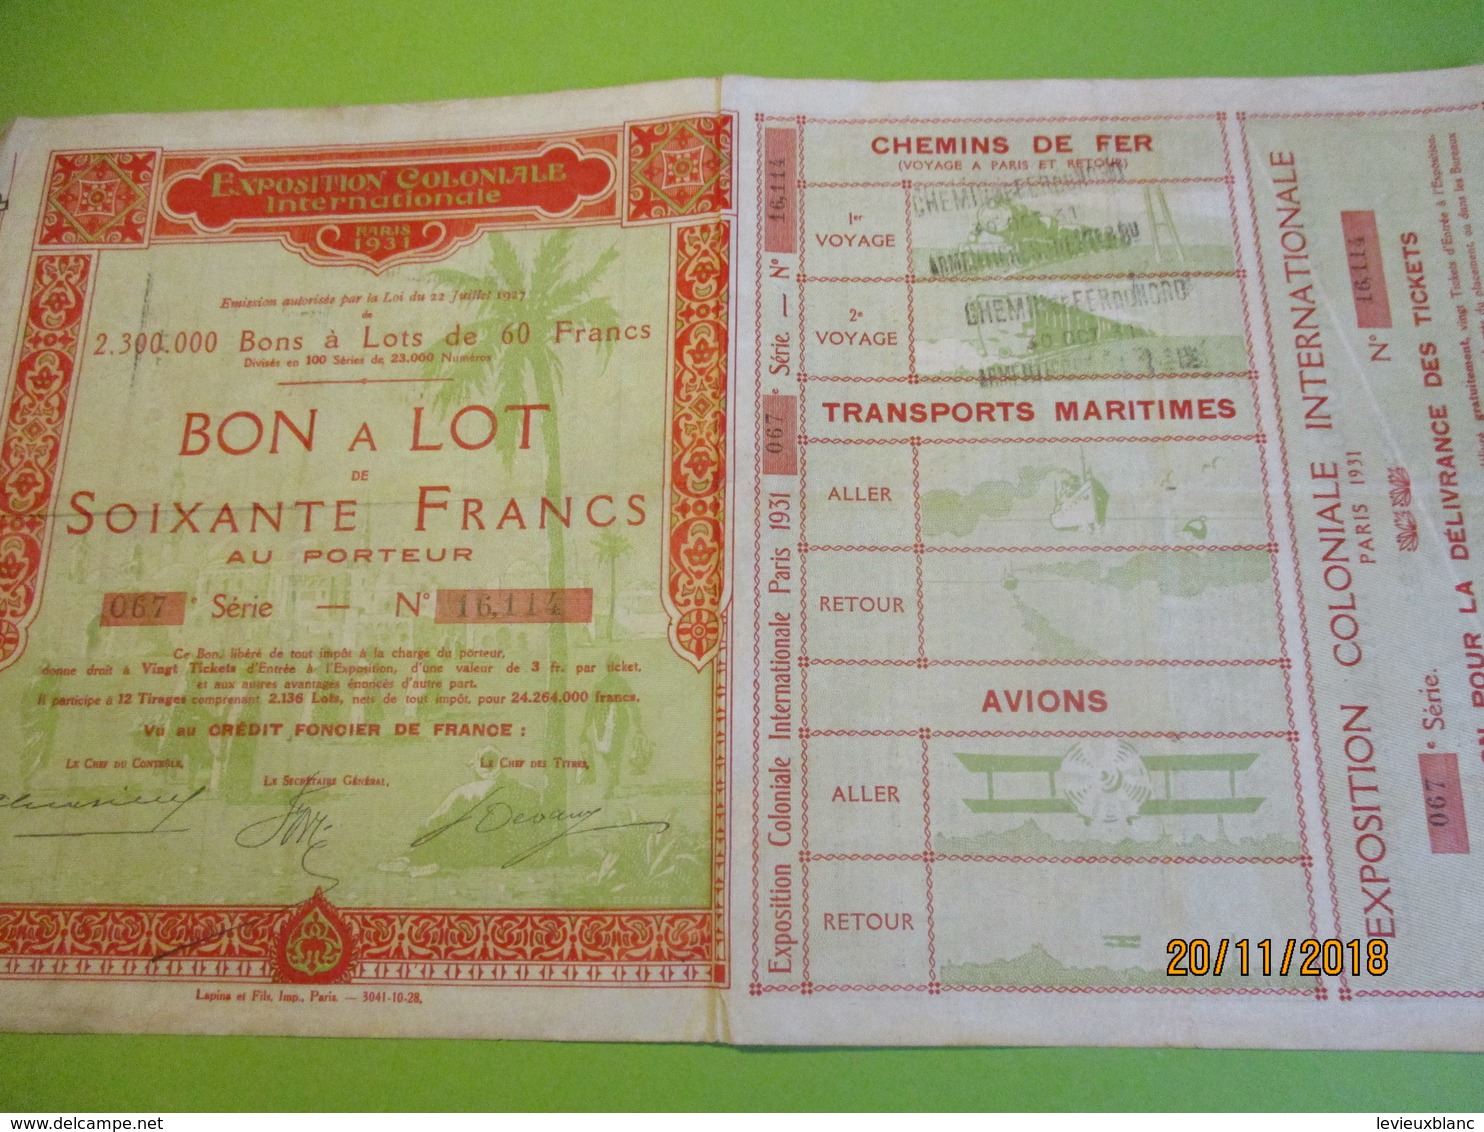 Bon à Lot 60 Fr Porteur/Exposition Coloniale Internationale/Imp Lapins & Fils/PARIS/1931                 ACT153 - Toerisme